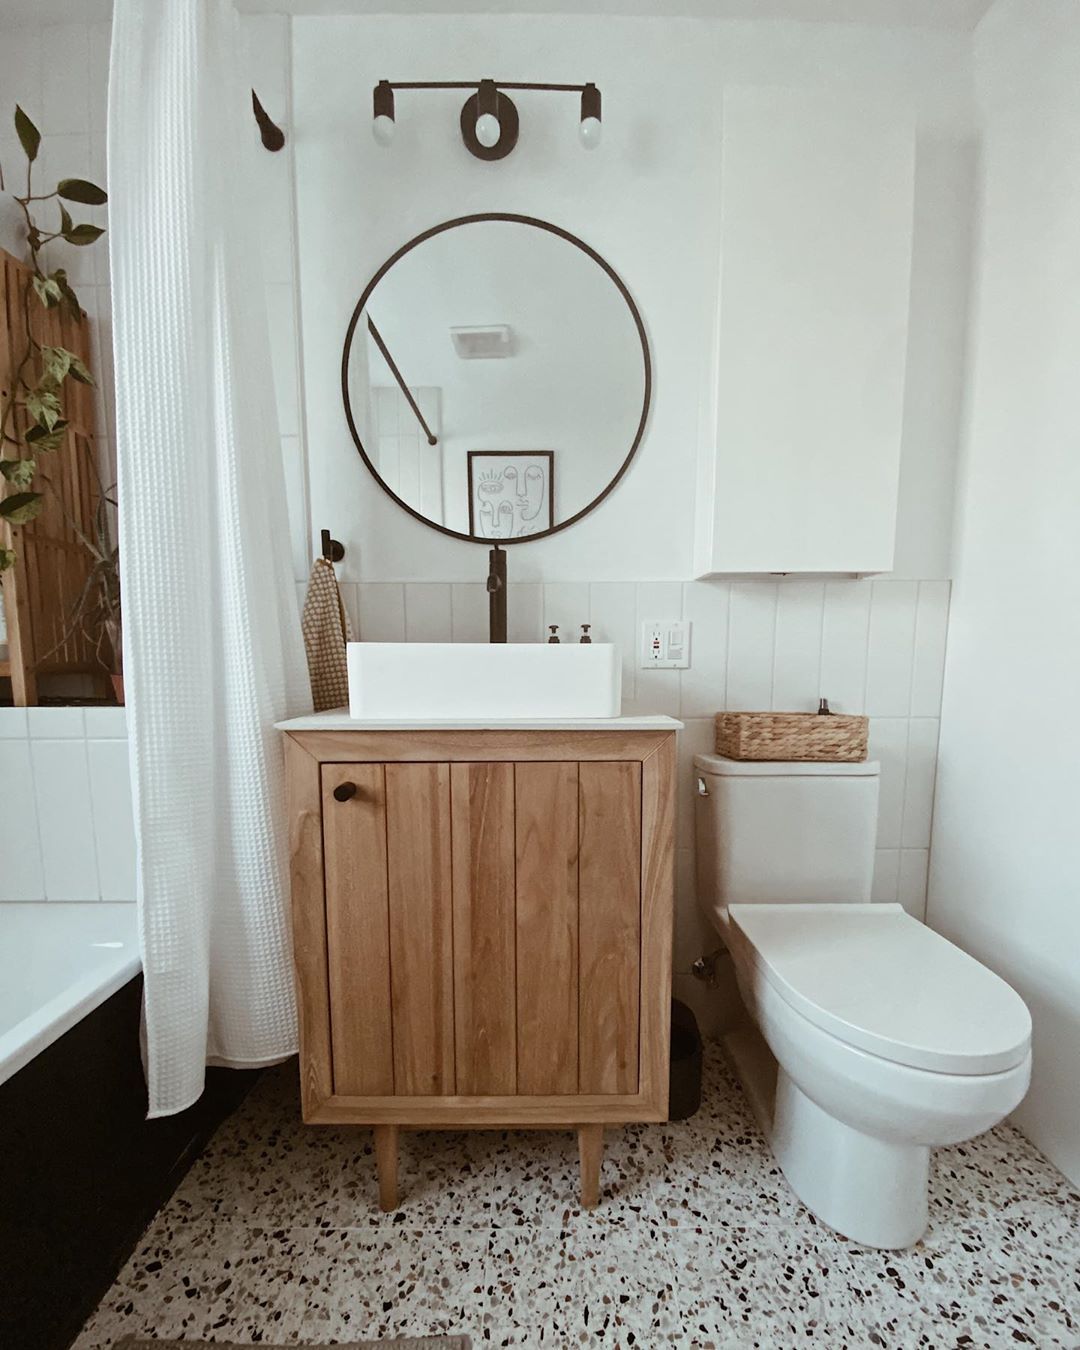 Nếu không nhìn kỹ, bạn sẽ bỏ qua chiếc tủ lưu trữ màu trắng, bề mặt nhẵn mịn phía trên toilet vì nó như ẩn mình vào nền tường đúng không nào? Thêm chiếc hộp đan thủ công bằng sợi lục bình ngay trên bồn cầu thì càng thêm xinh xắn. 